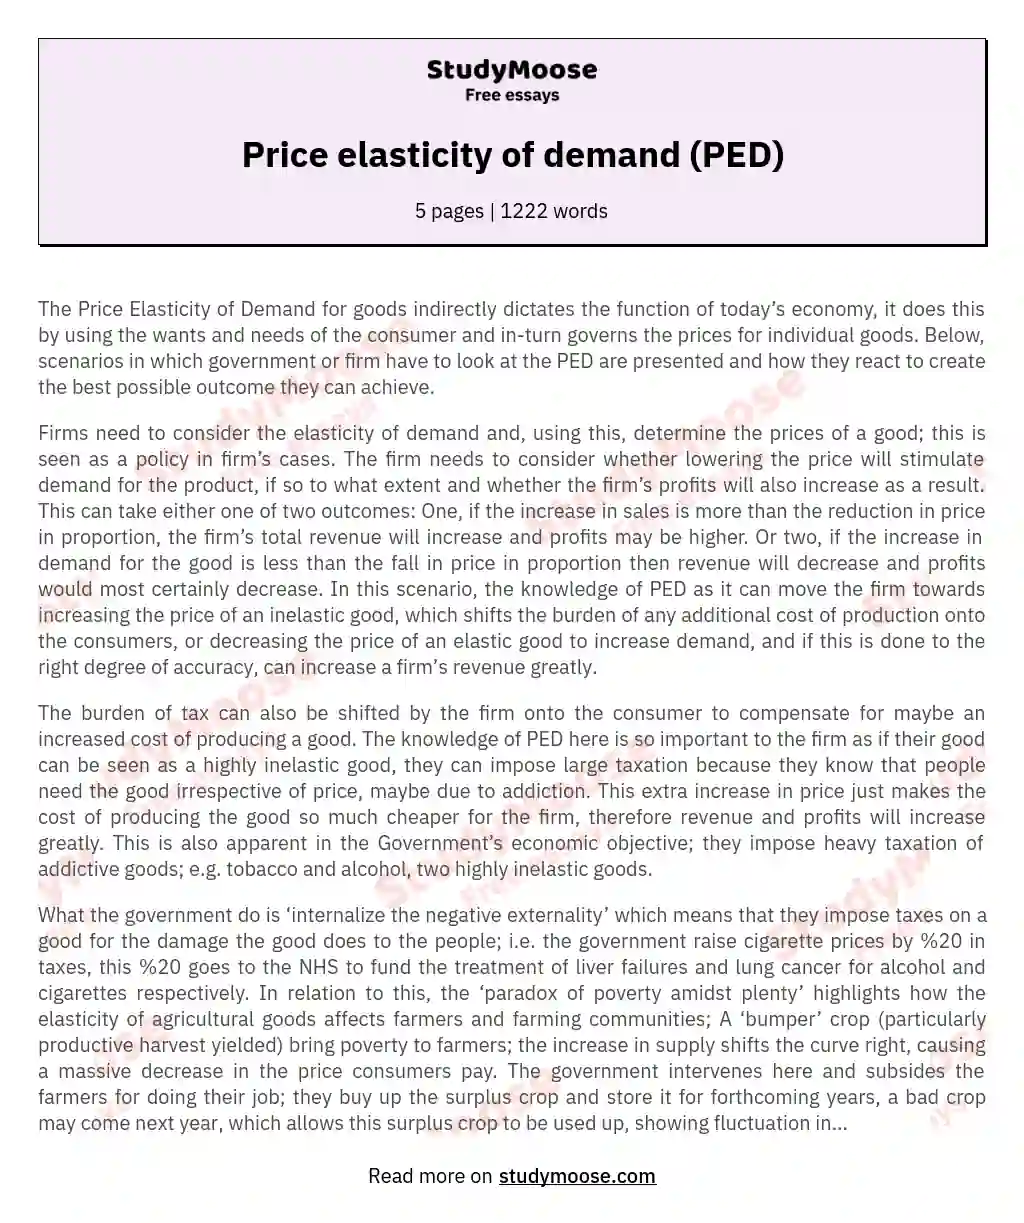 Price elasticity of demand (PED) essay